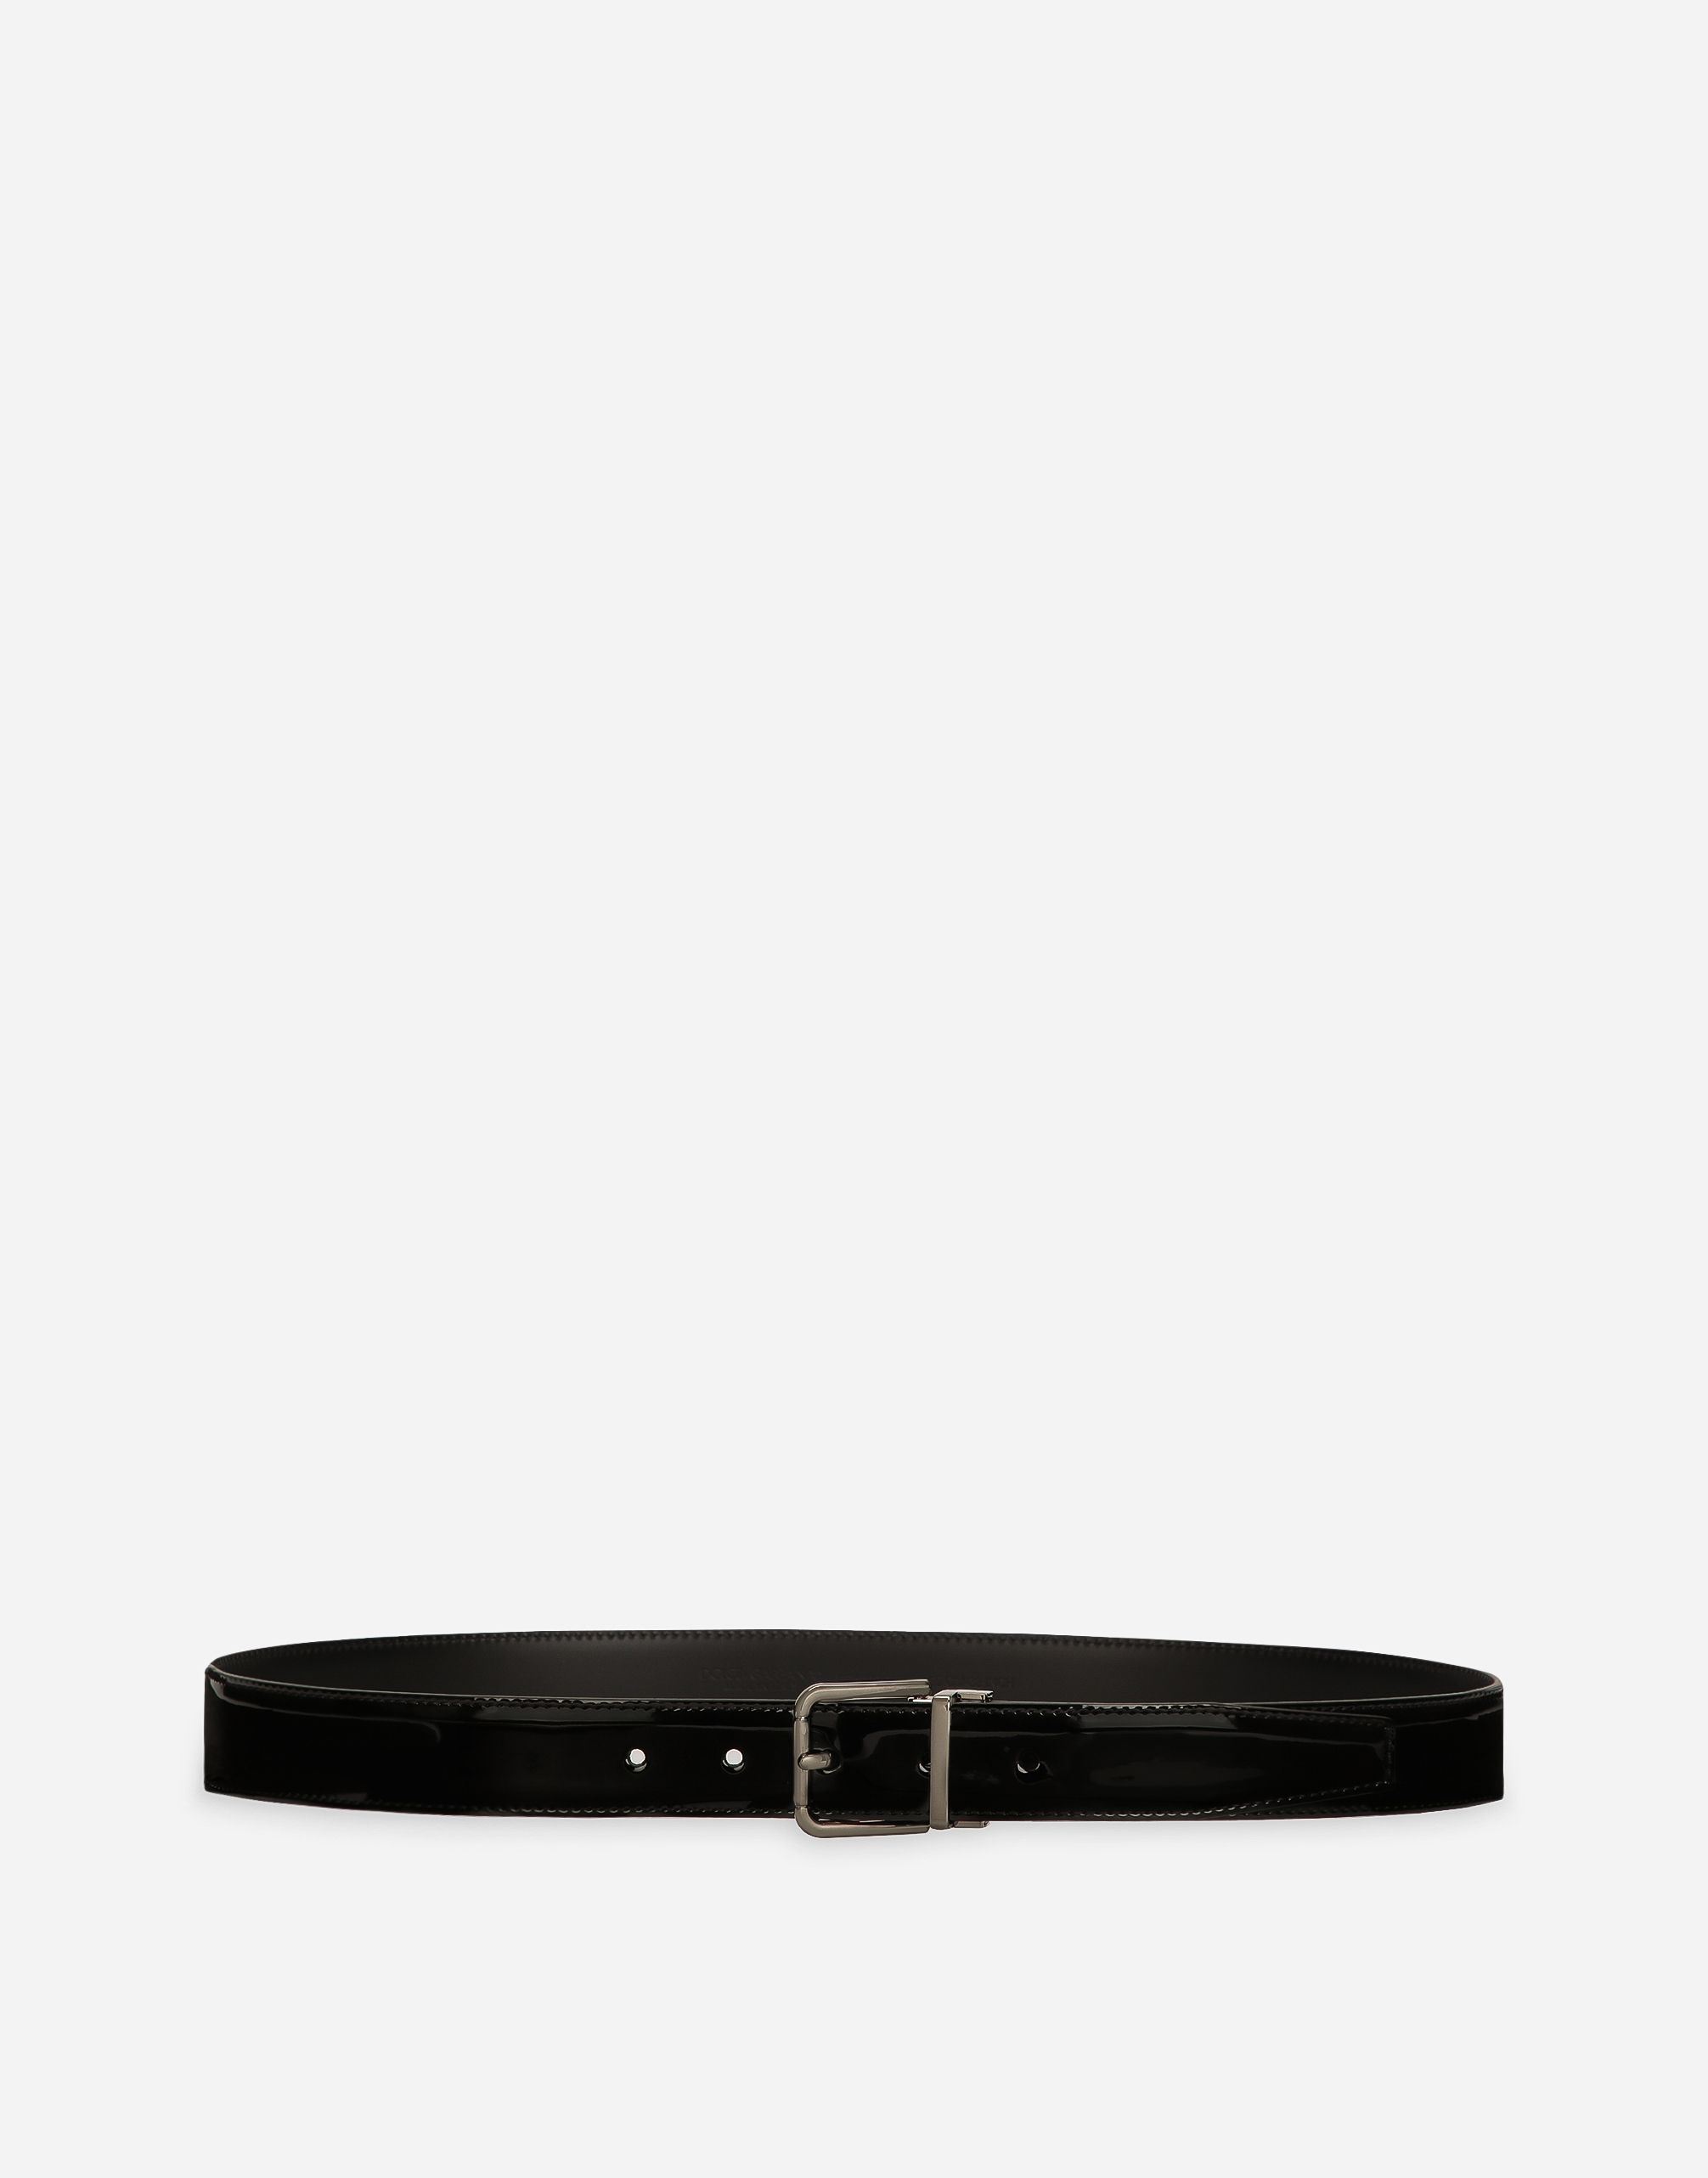 Patent calfskin belt in Black